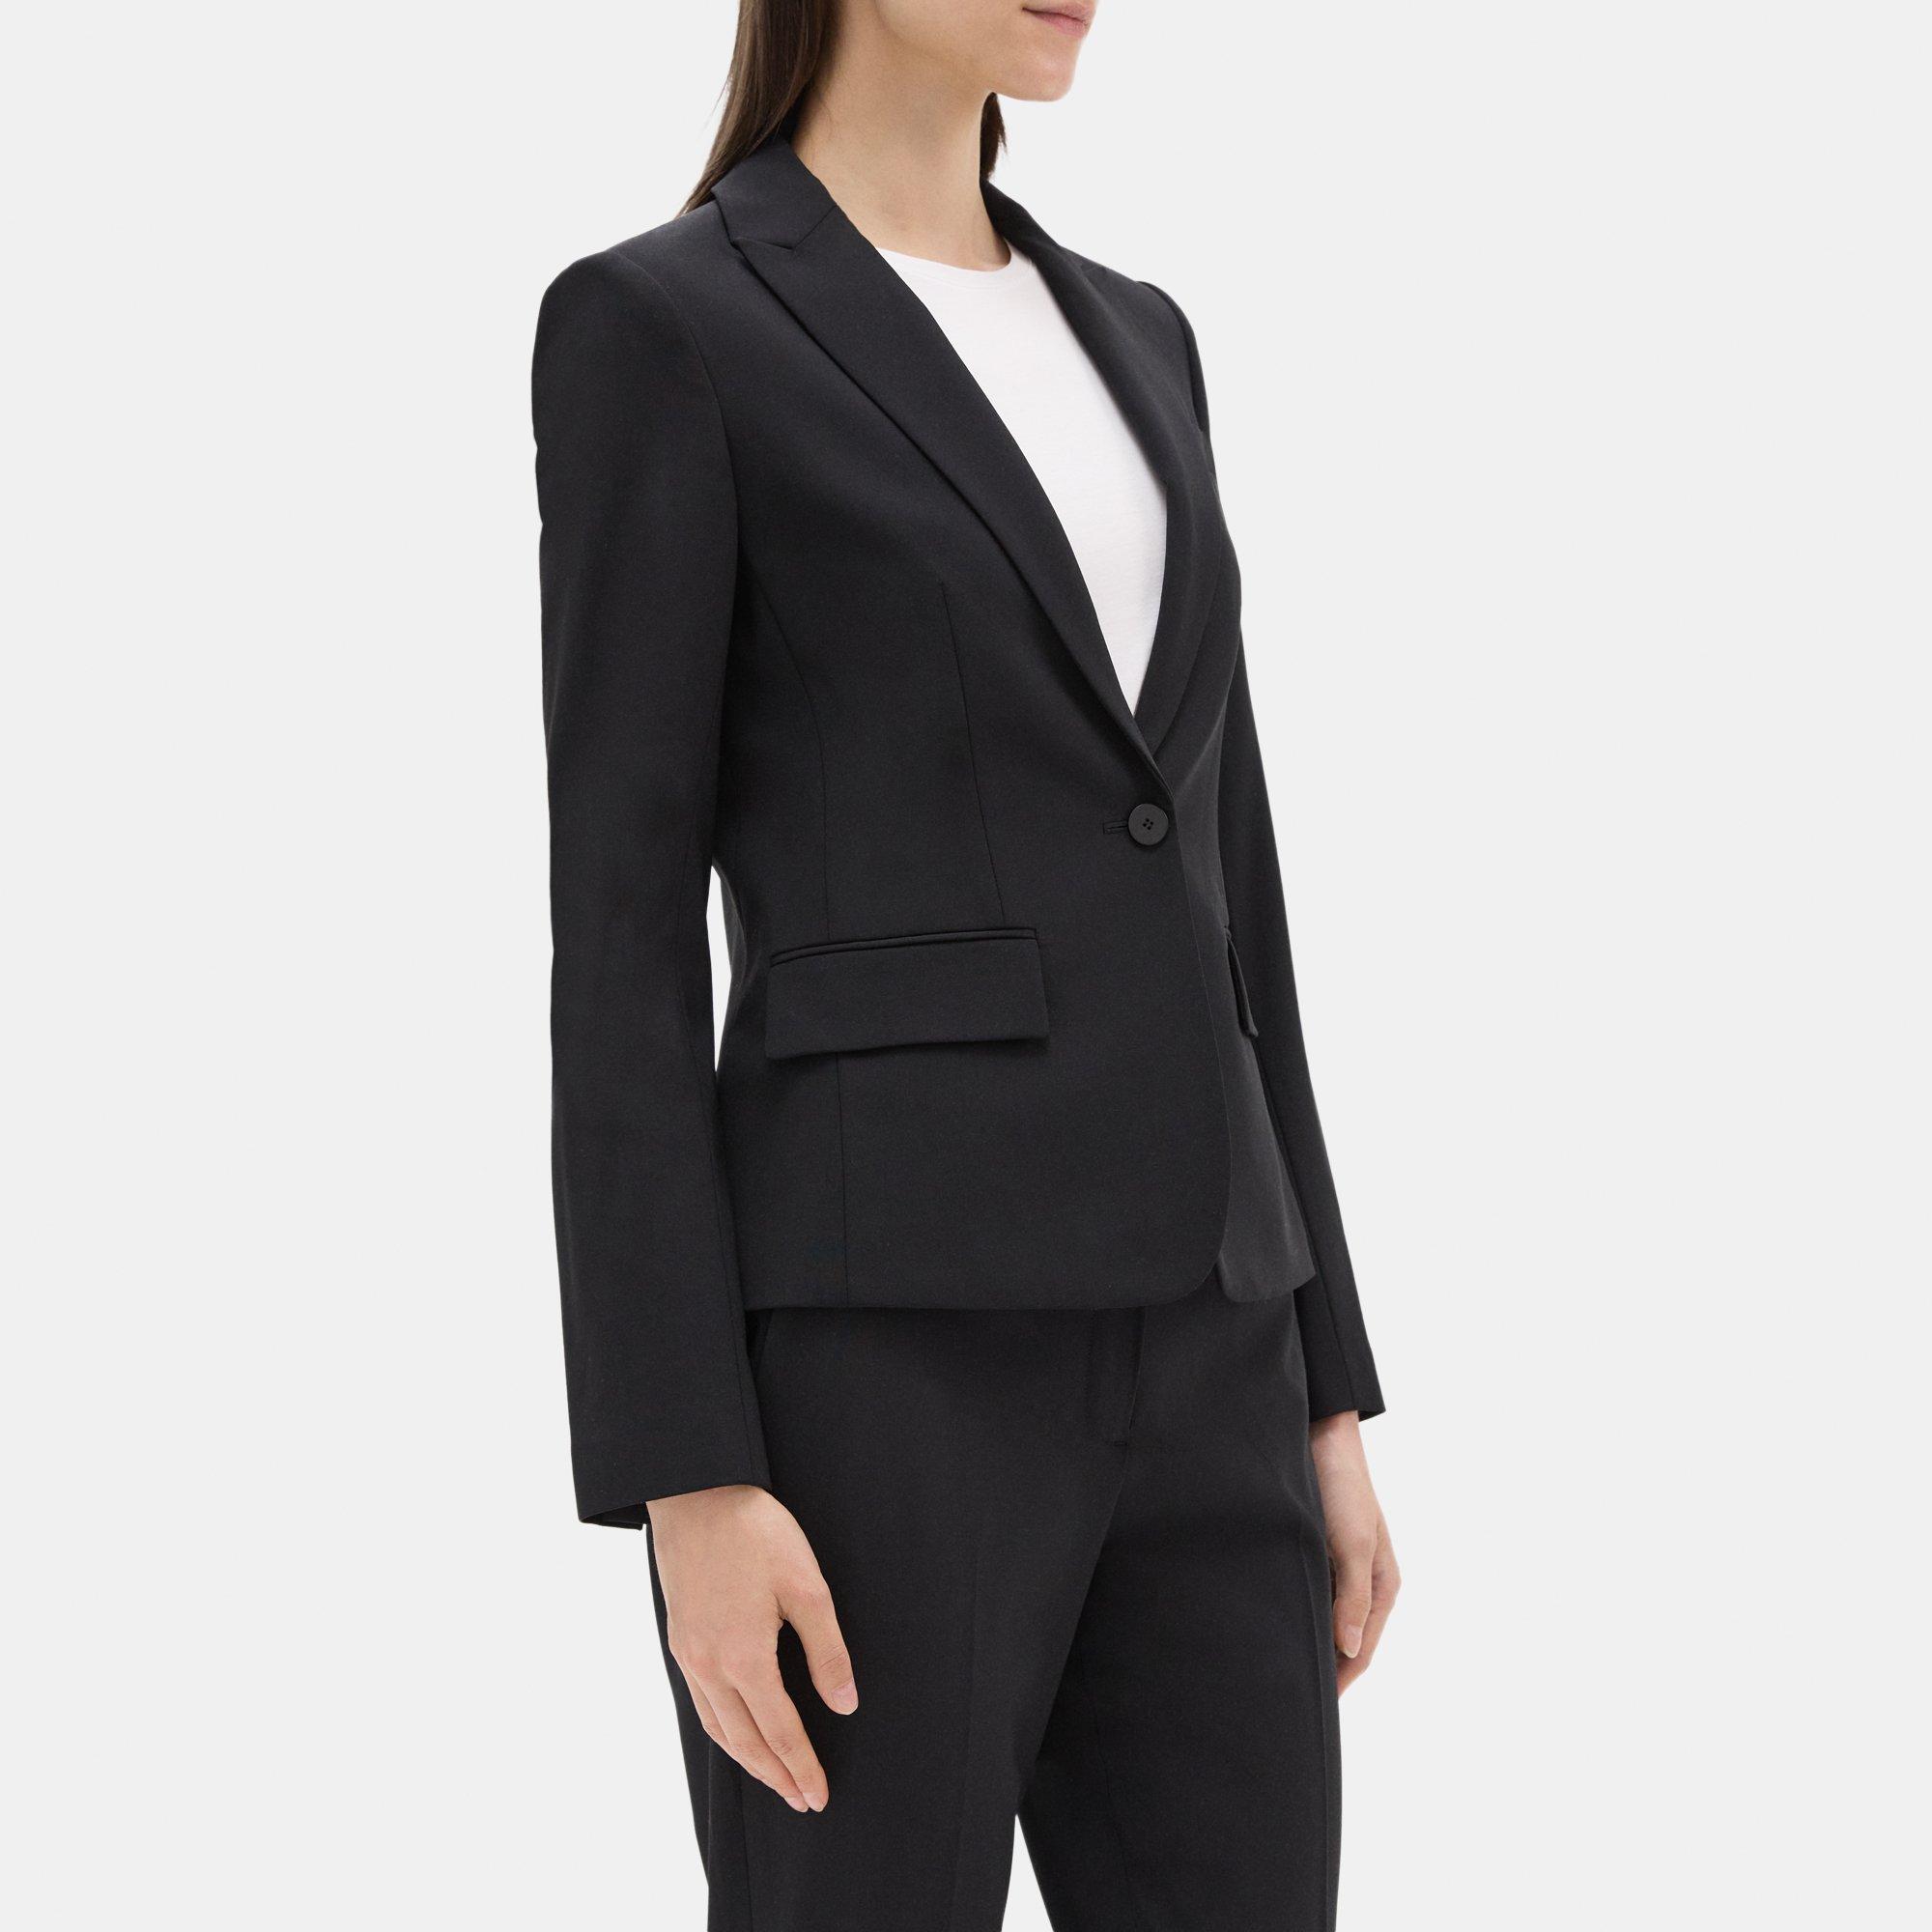 Women's Black Suit